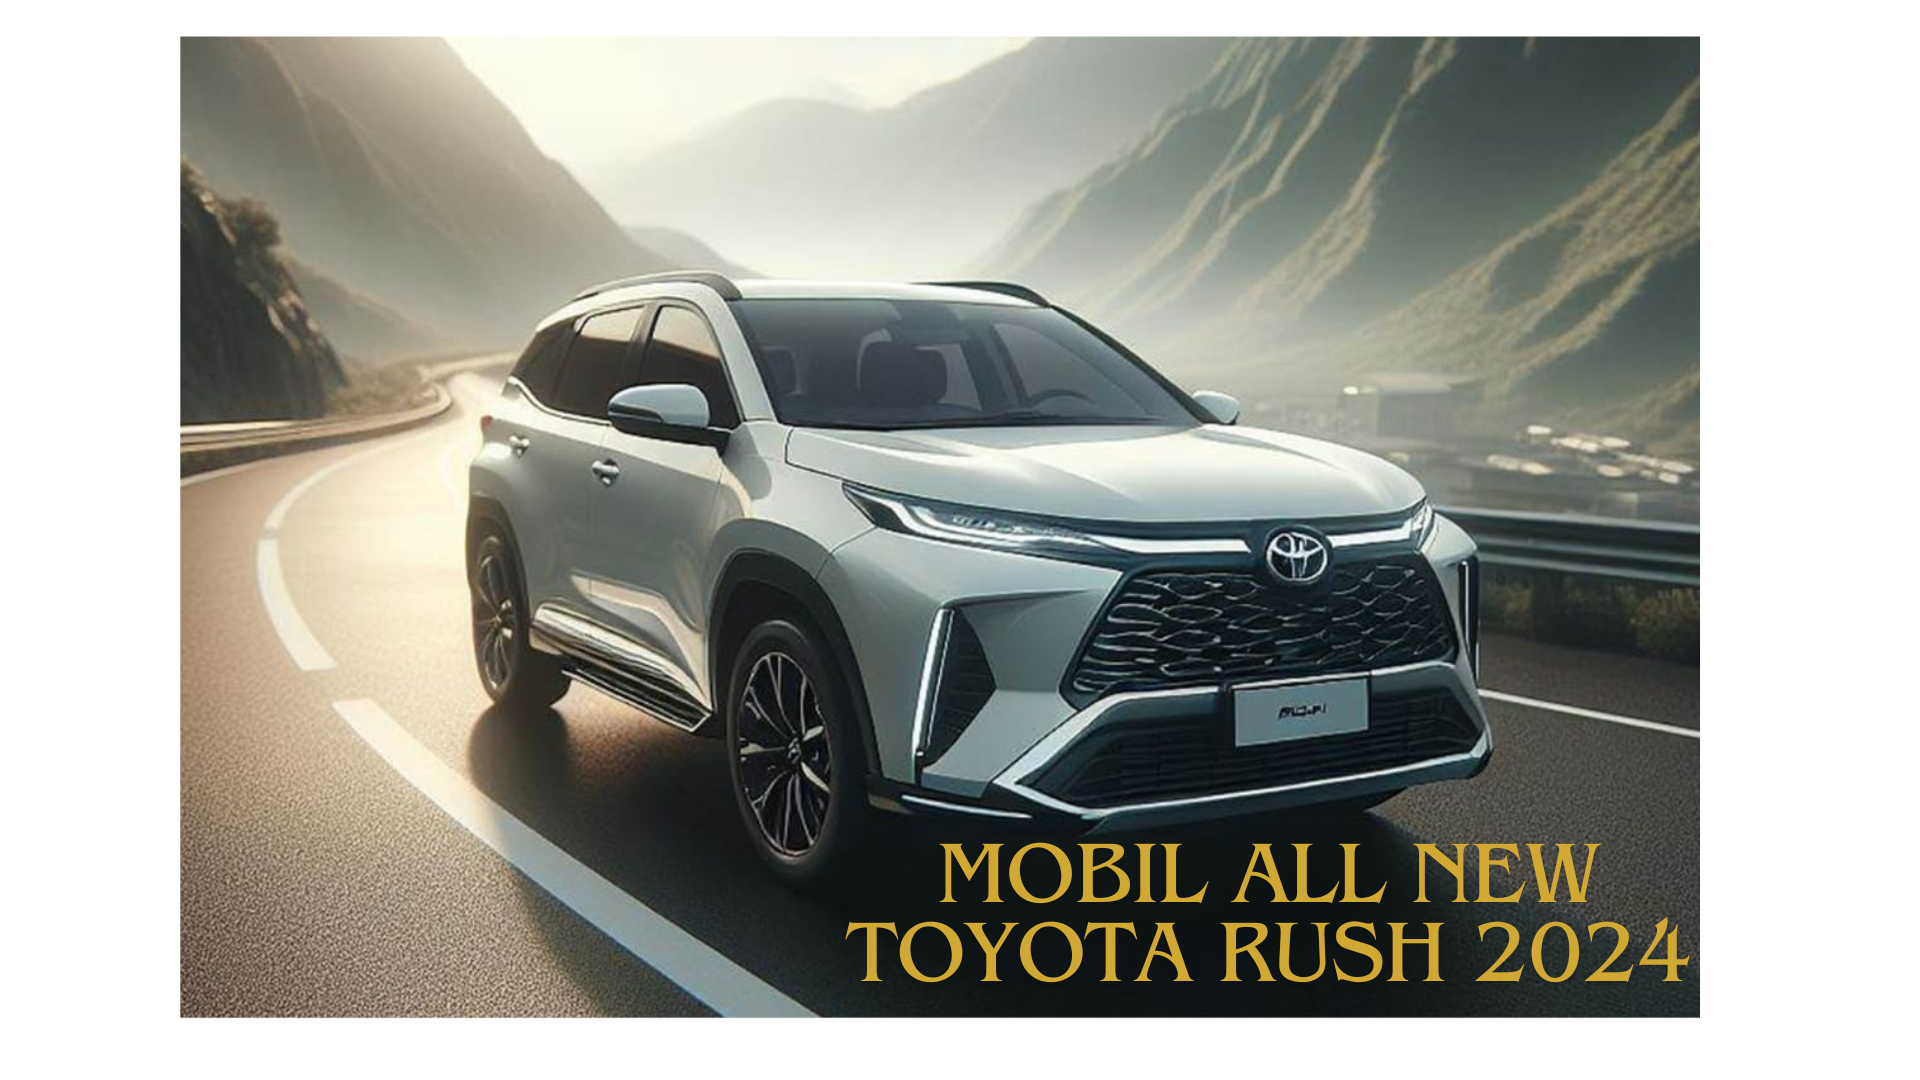 Mobil All New Toyota Rush 2024, Revolusi Gaya dan Fitur Mewah dalam SUV Kelas Menengah